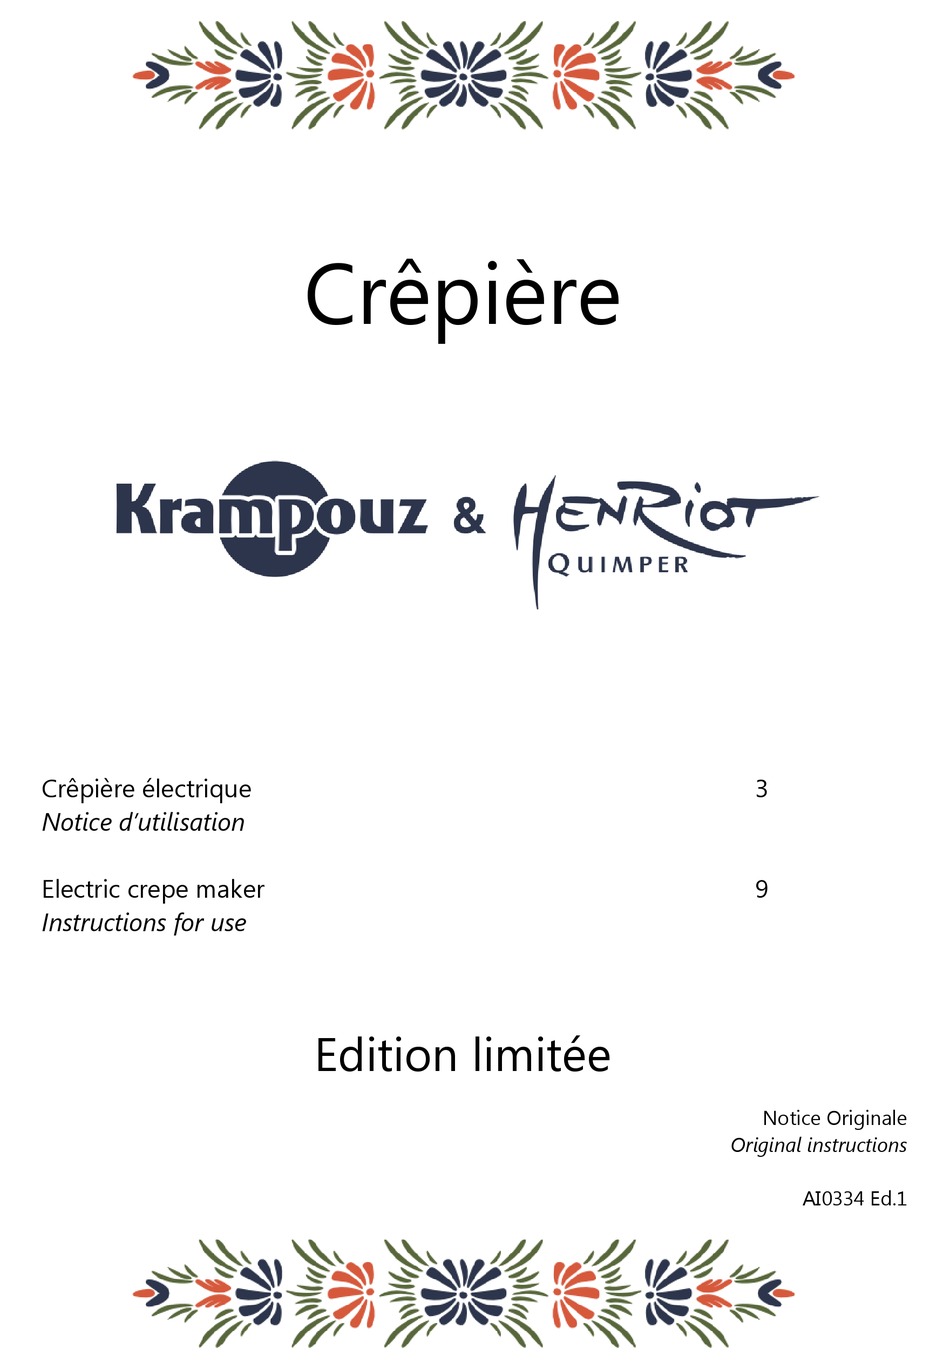 Crêpière Krampouz et Henriot-Quimper